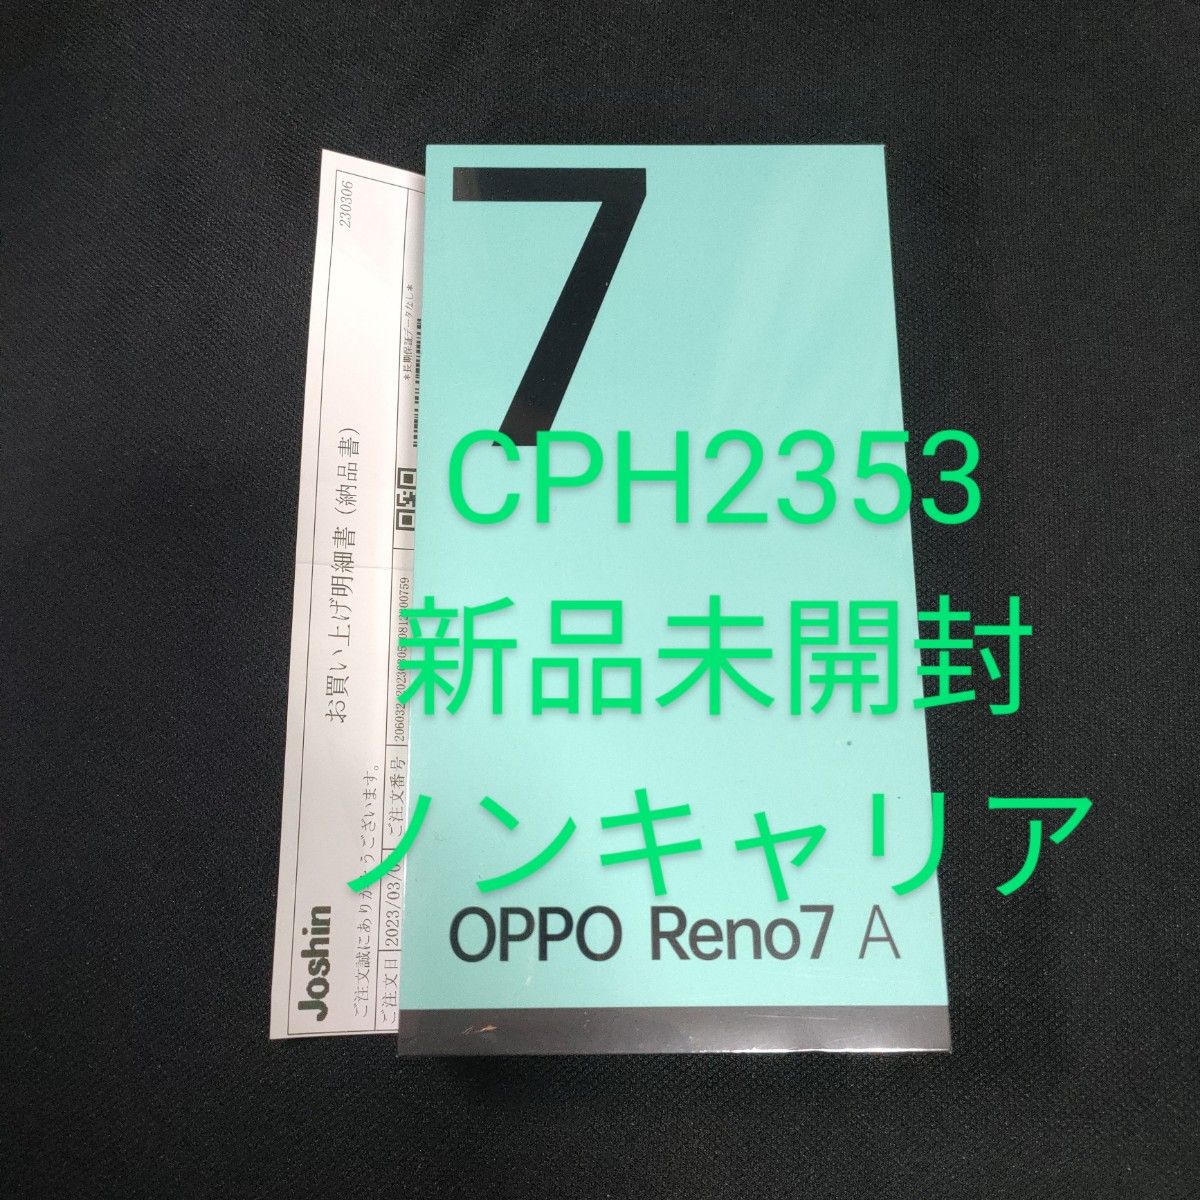 くるんで OPPO Reno7 A CPH2353 SIMフリー ドリームブルーの トポストで